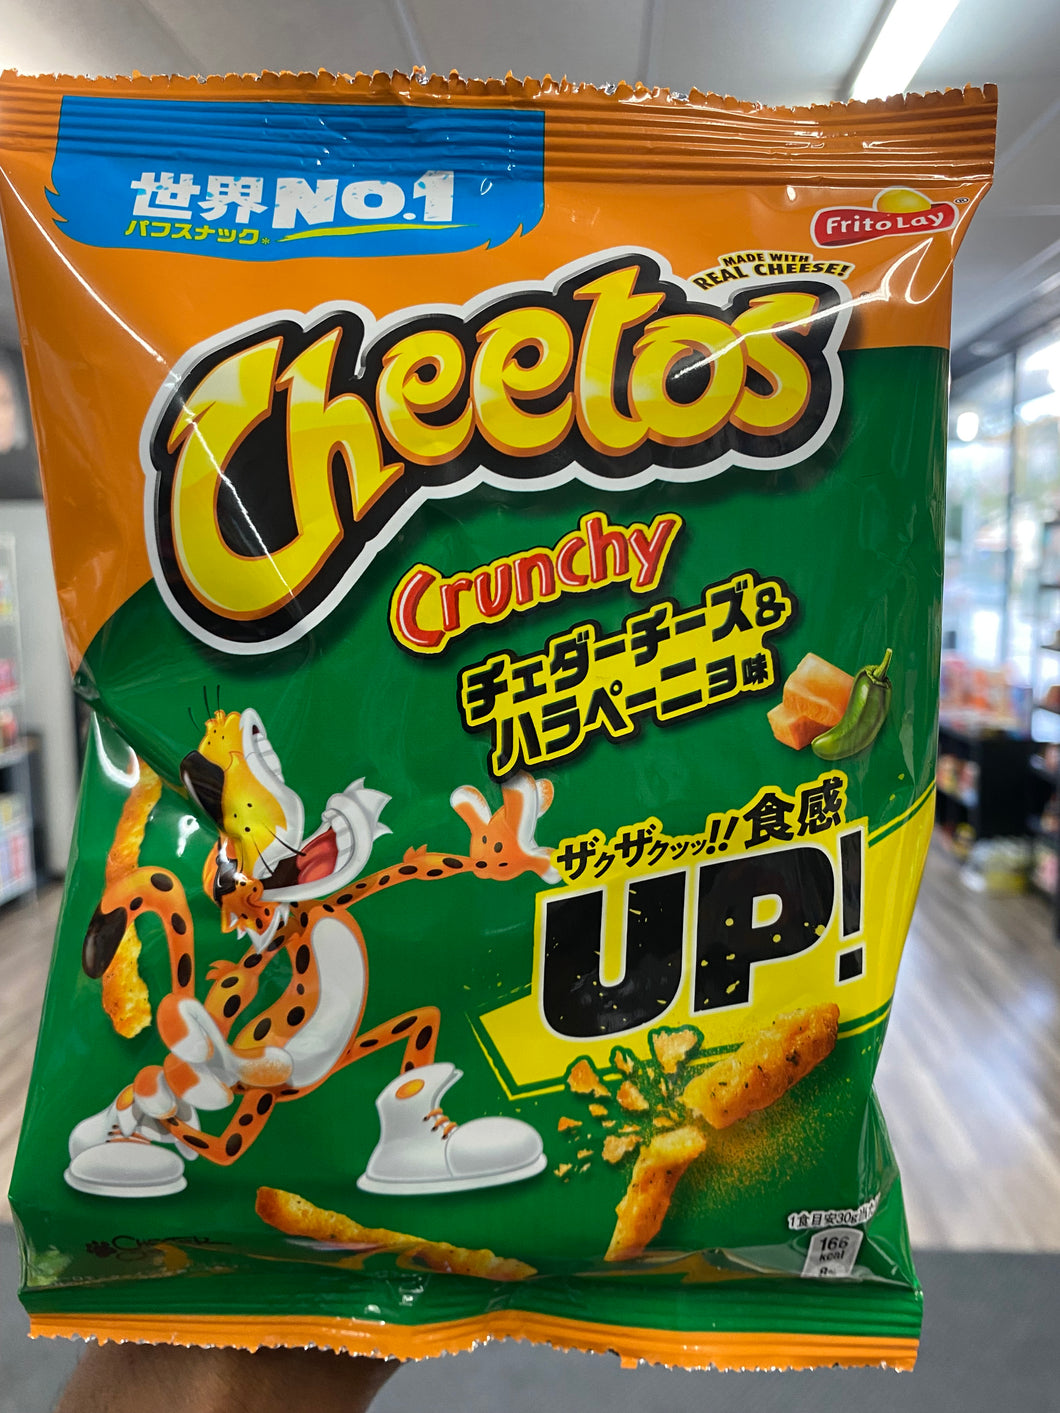 Cheetos Crunchy(Japan)